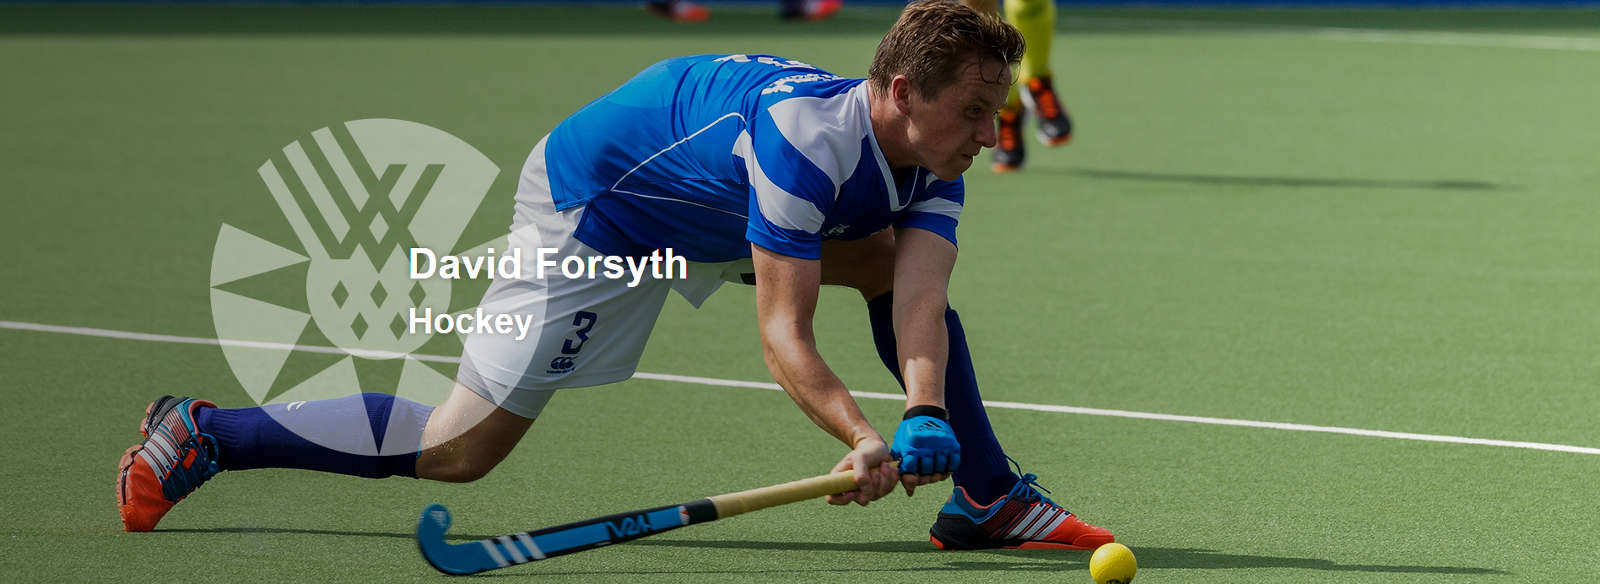 David Forsyth | playing hockey